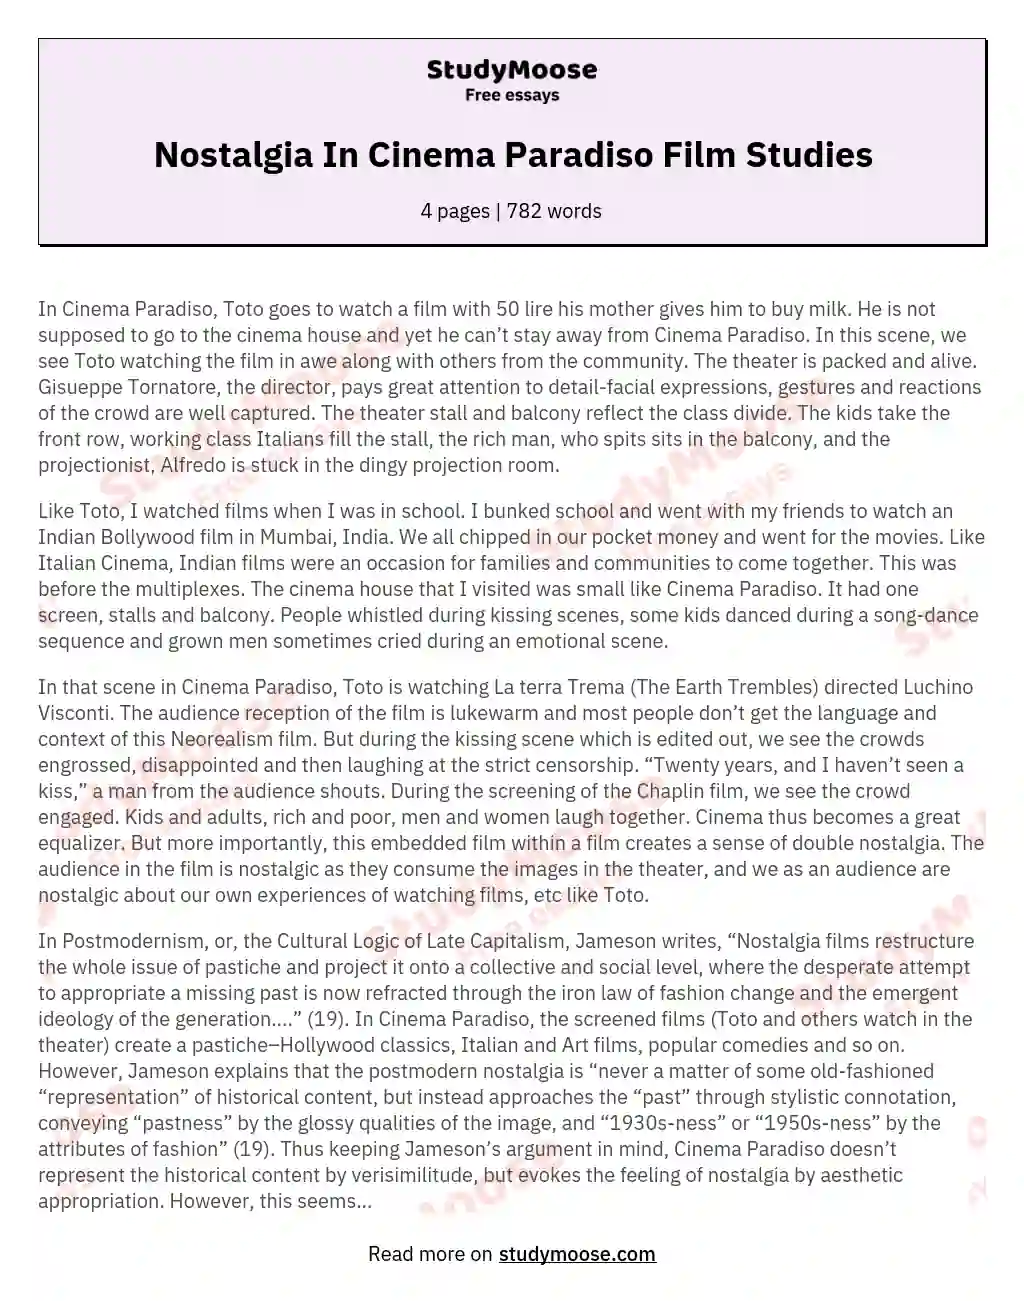 Nostalgia In Cinema Paradiso Film Studies essay